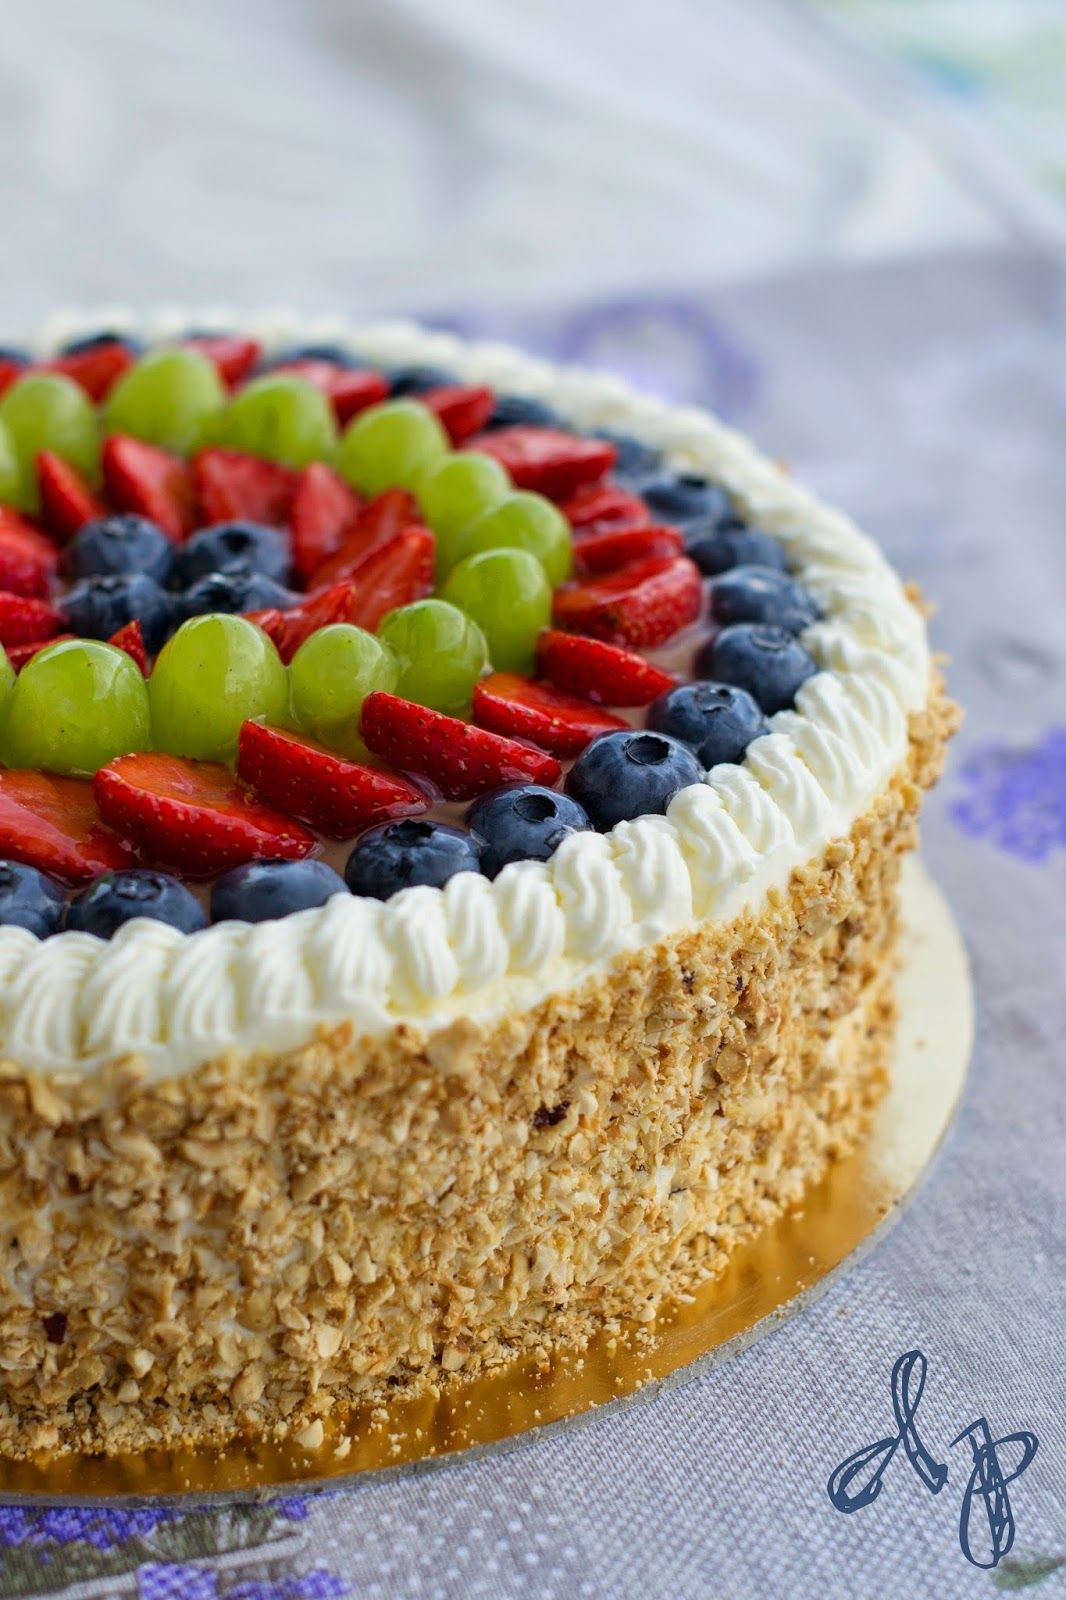 Как украсить красиво торт фруктами: Как украсить торт фруктами и ягодами в домашних условиях: идеи и пошаговые рецепты